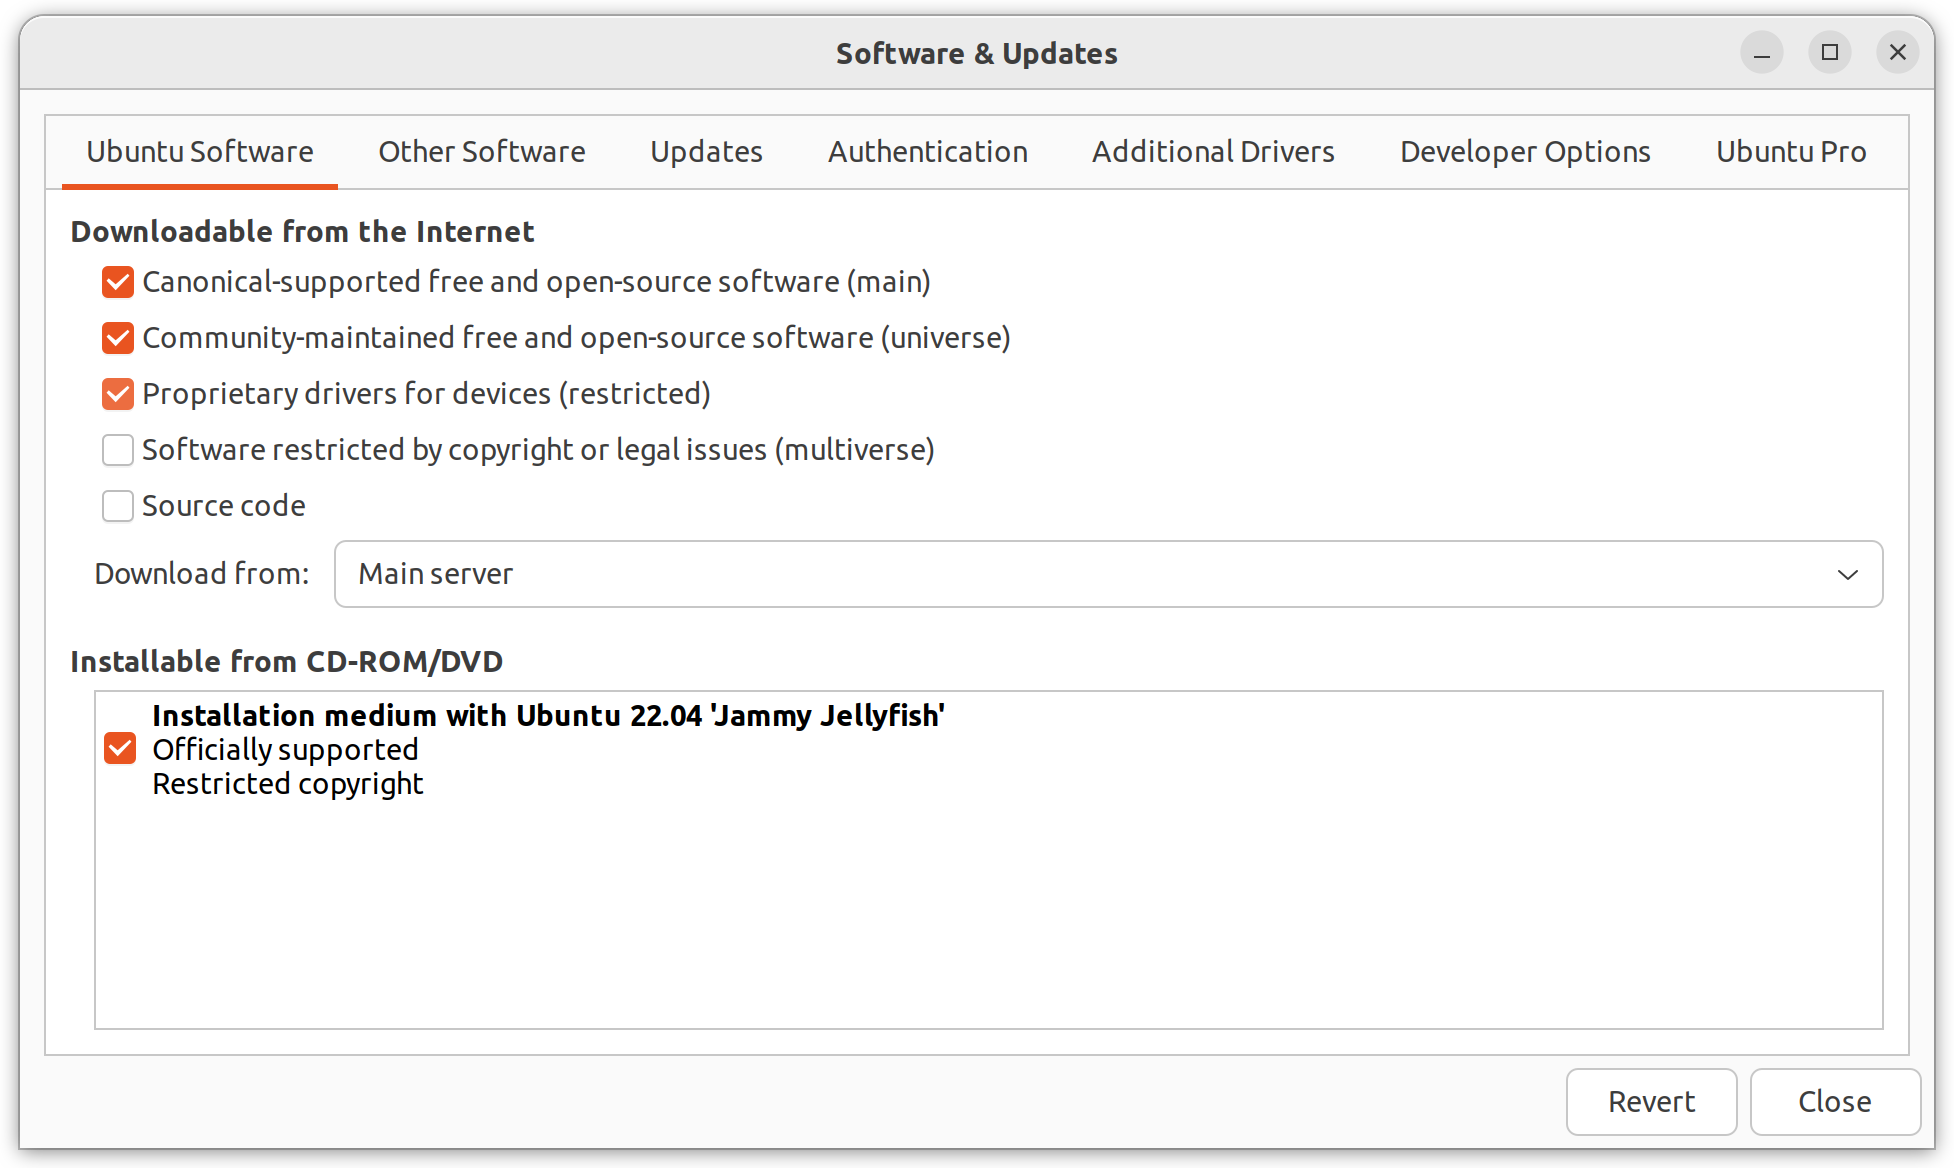 How to find my IP address on Ubuntu 22.04 Jammy Jellyfish Linux